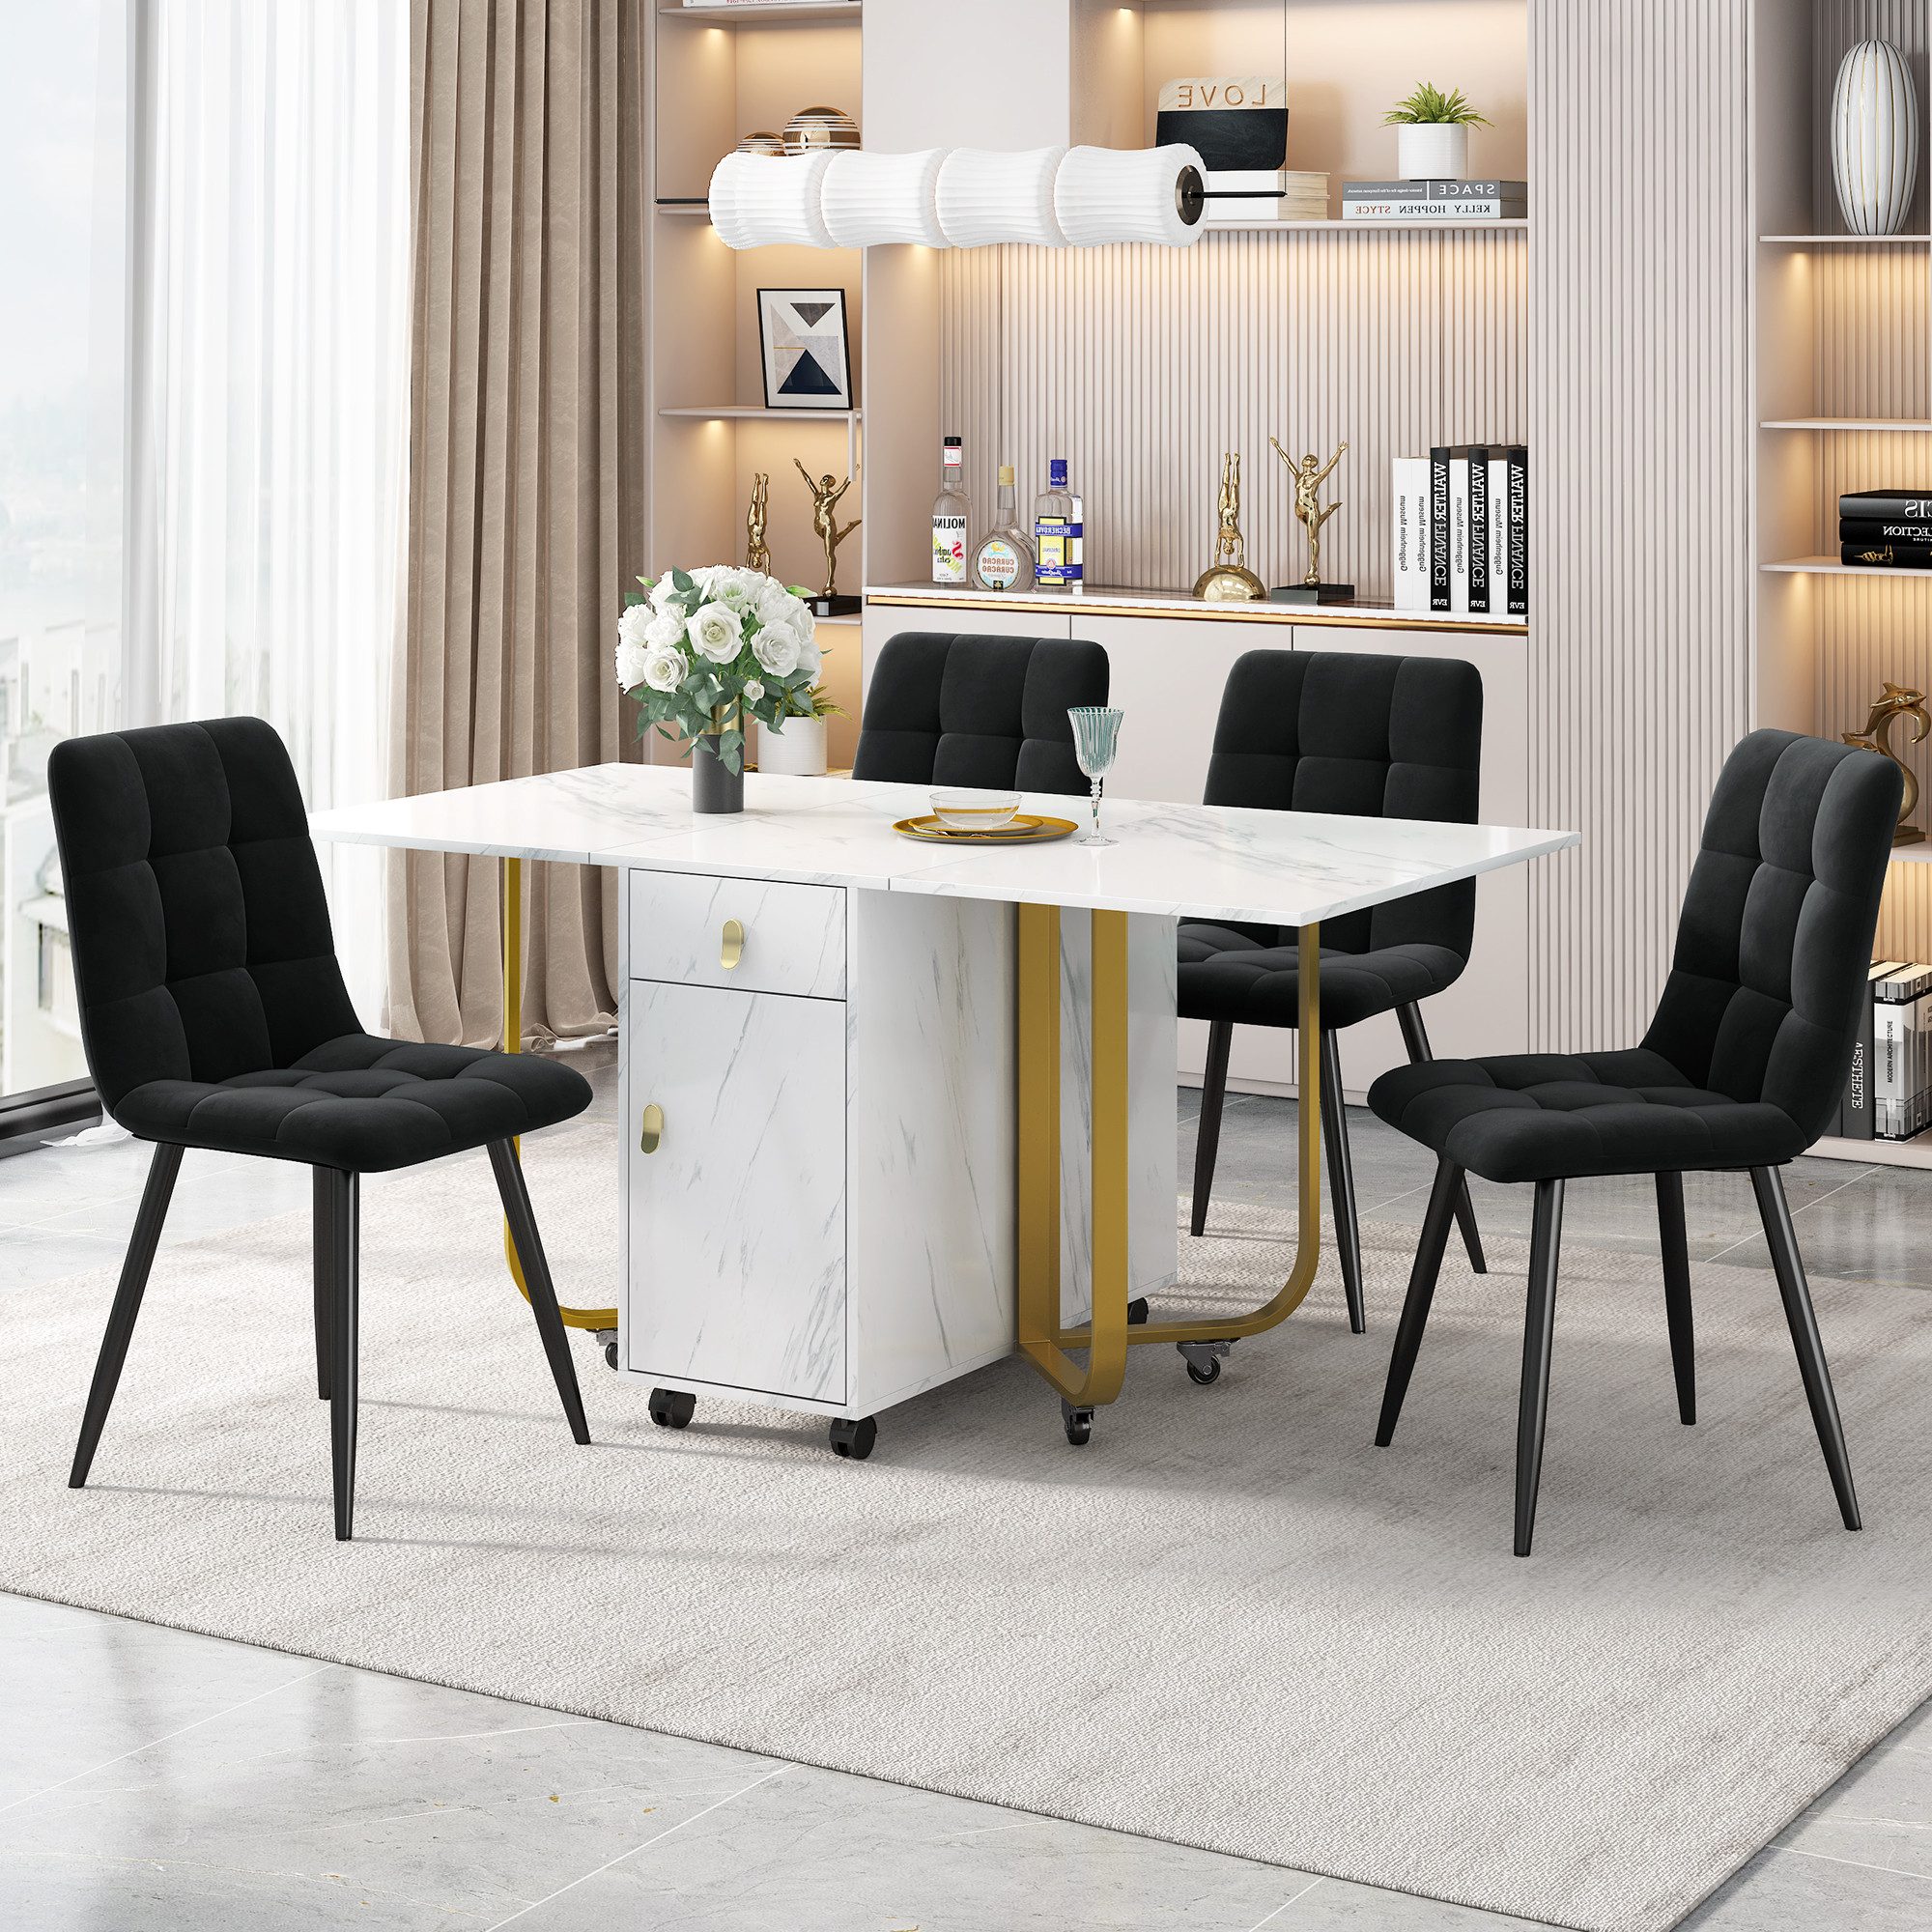 JOIVI Essgruppe Klappbarer Küchentisch Set, (Samt Esszimmerstuhl,Polsterstuhl Design Stuhl mit Rückenlehne), MDF Tischplatte in Weißer, Schwarz Tischbeine